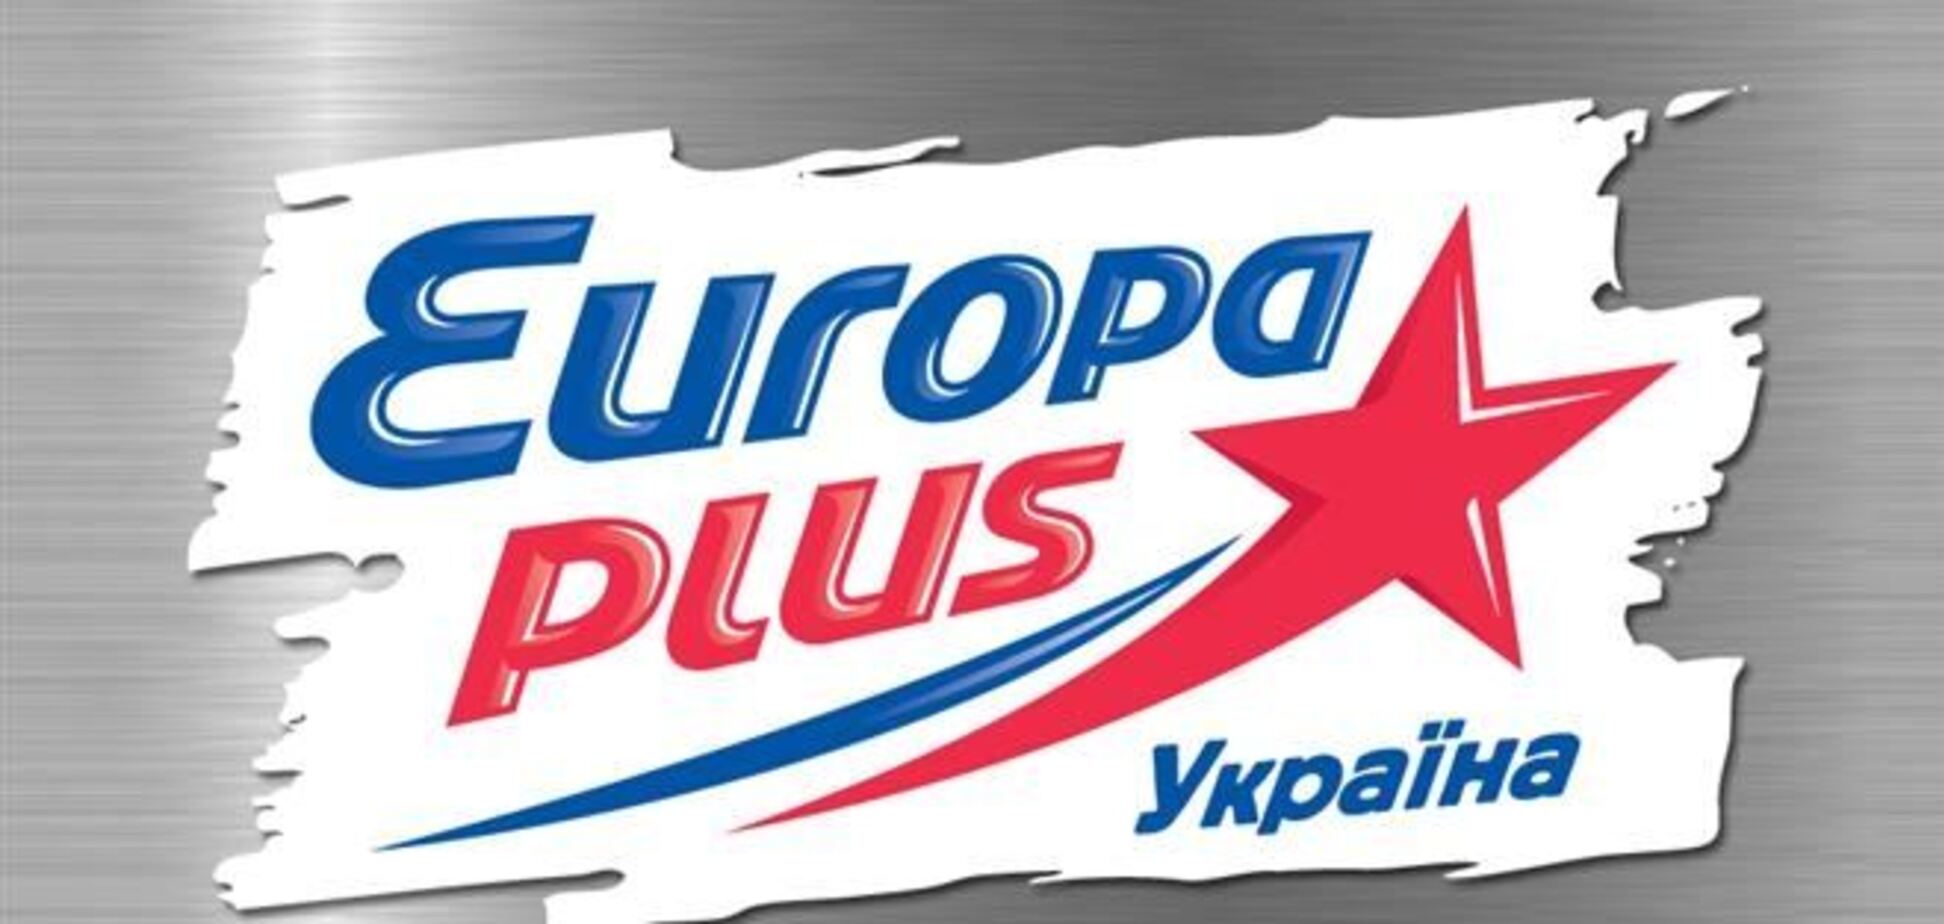 Курченко купил радиостанцию 'Европа Plus'